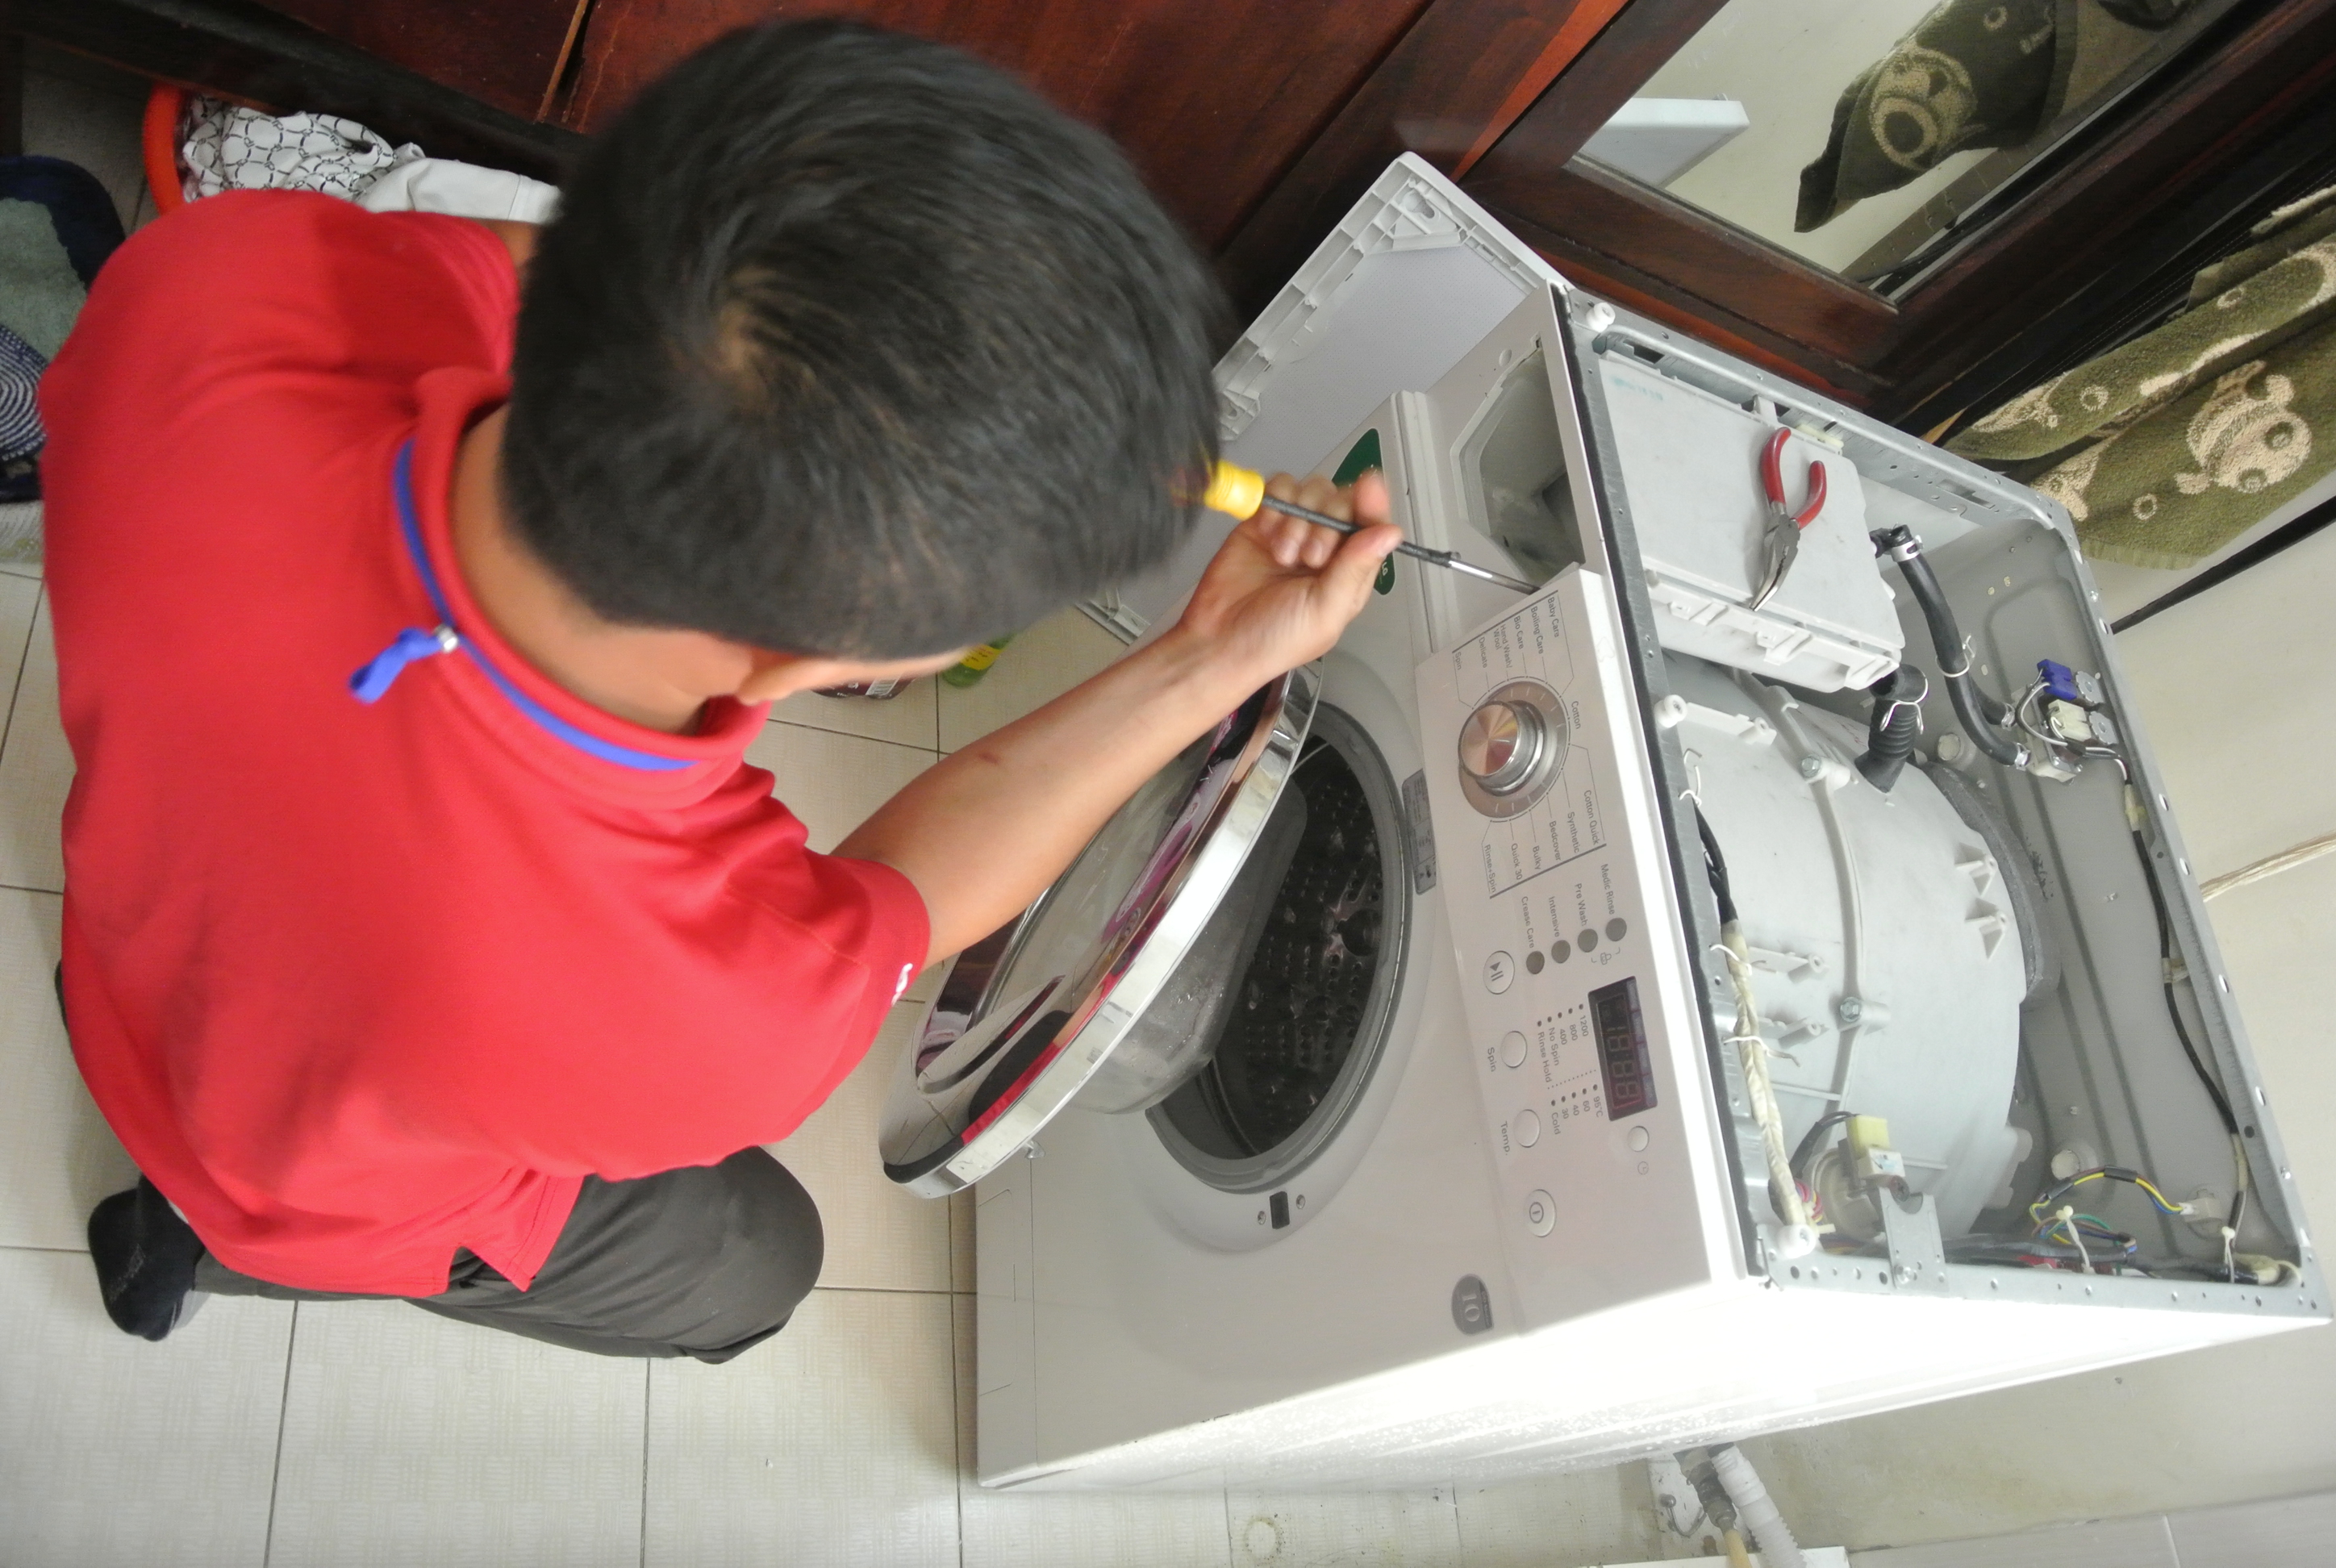 Cung cấp dịch vụ bảo dưỡng máy giặt tại Hải Phòng uy tín